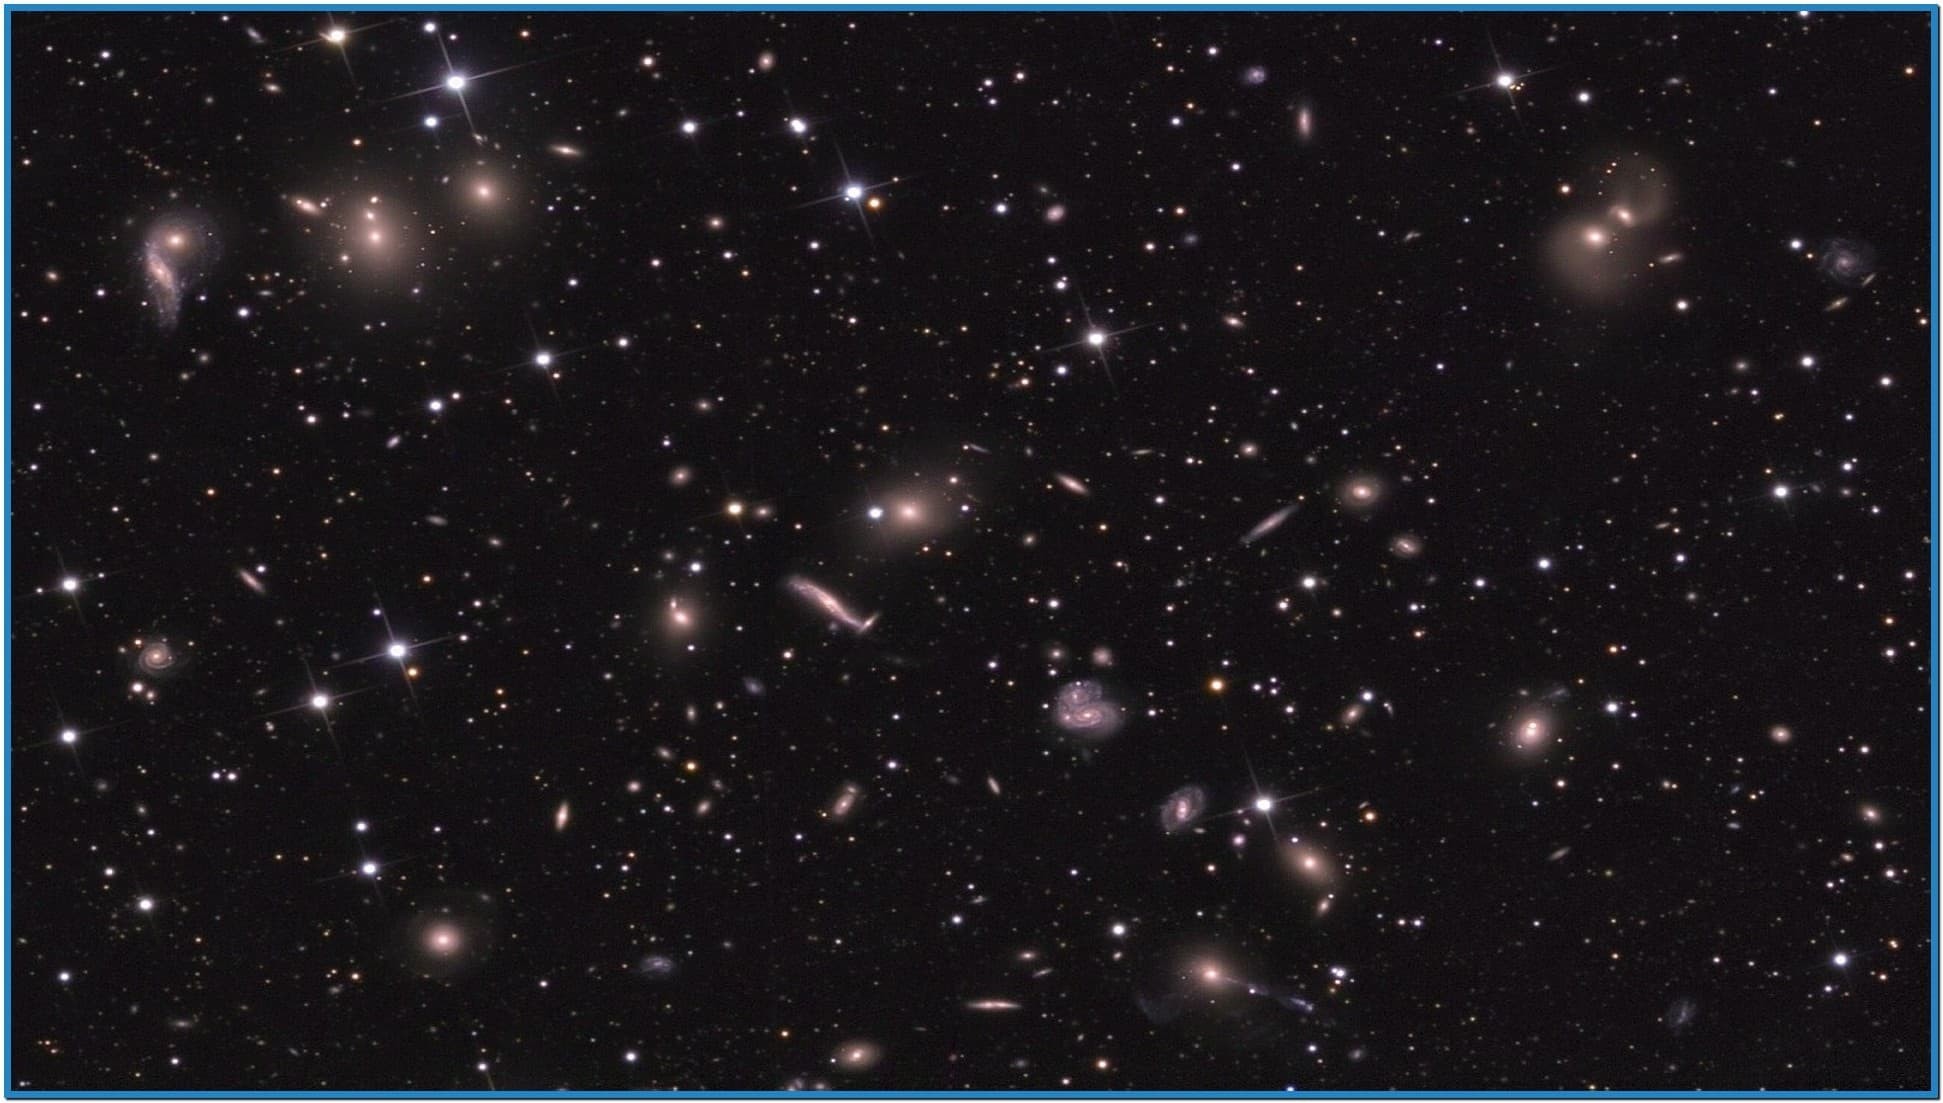 1943x1103 Star wars galaxy screensaver - Download free